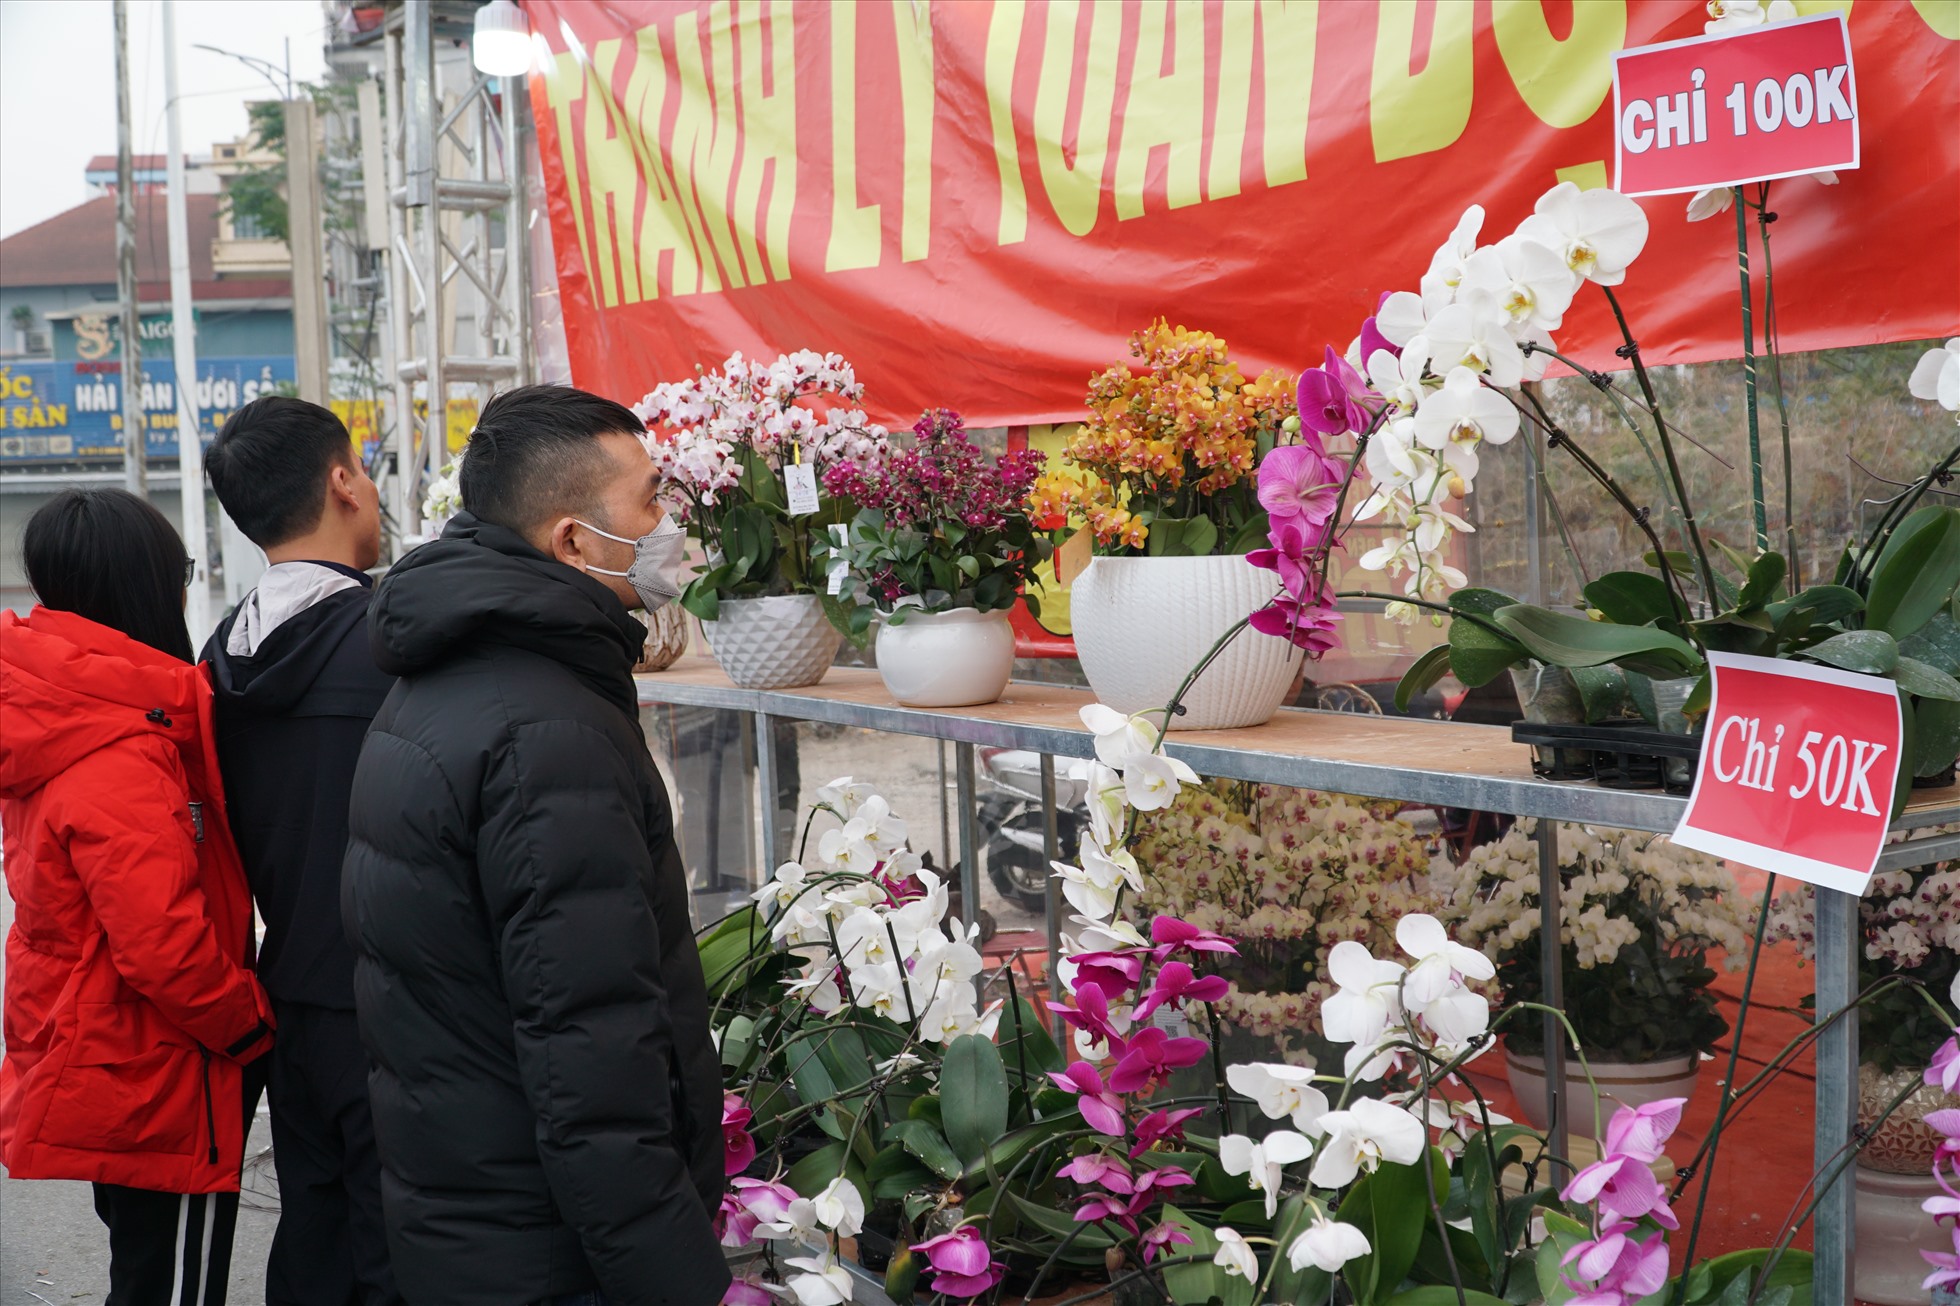 Đây cũng là thời điểm mà nhiều người dân lựa chọn để mua hoa vì giá rẻ.